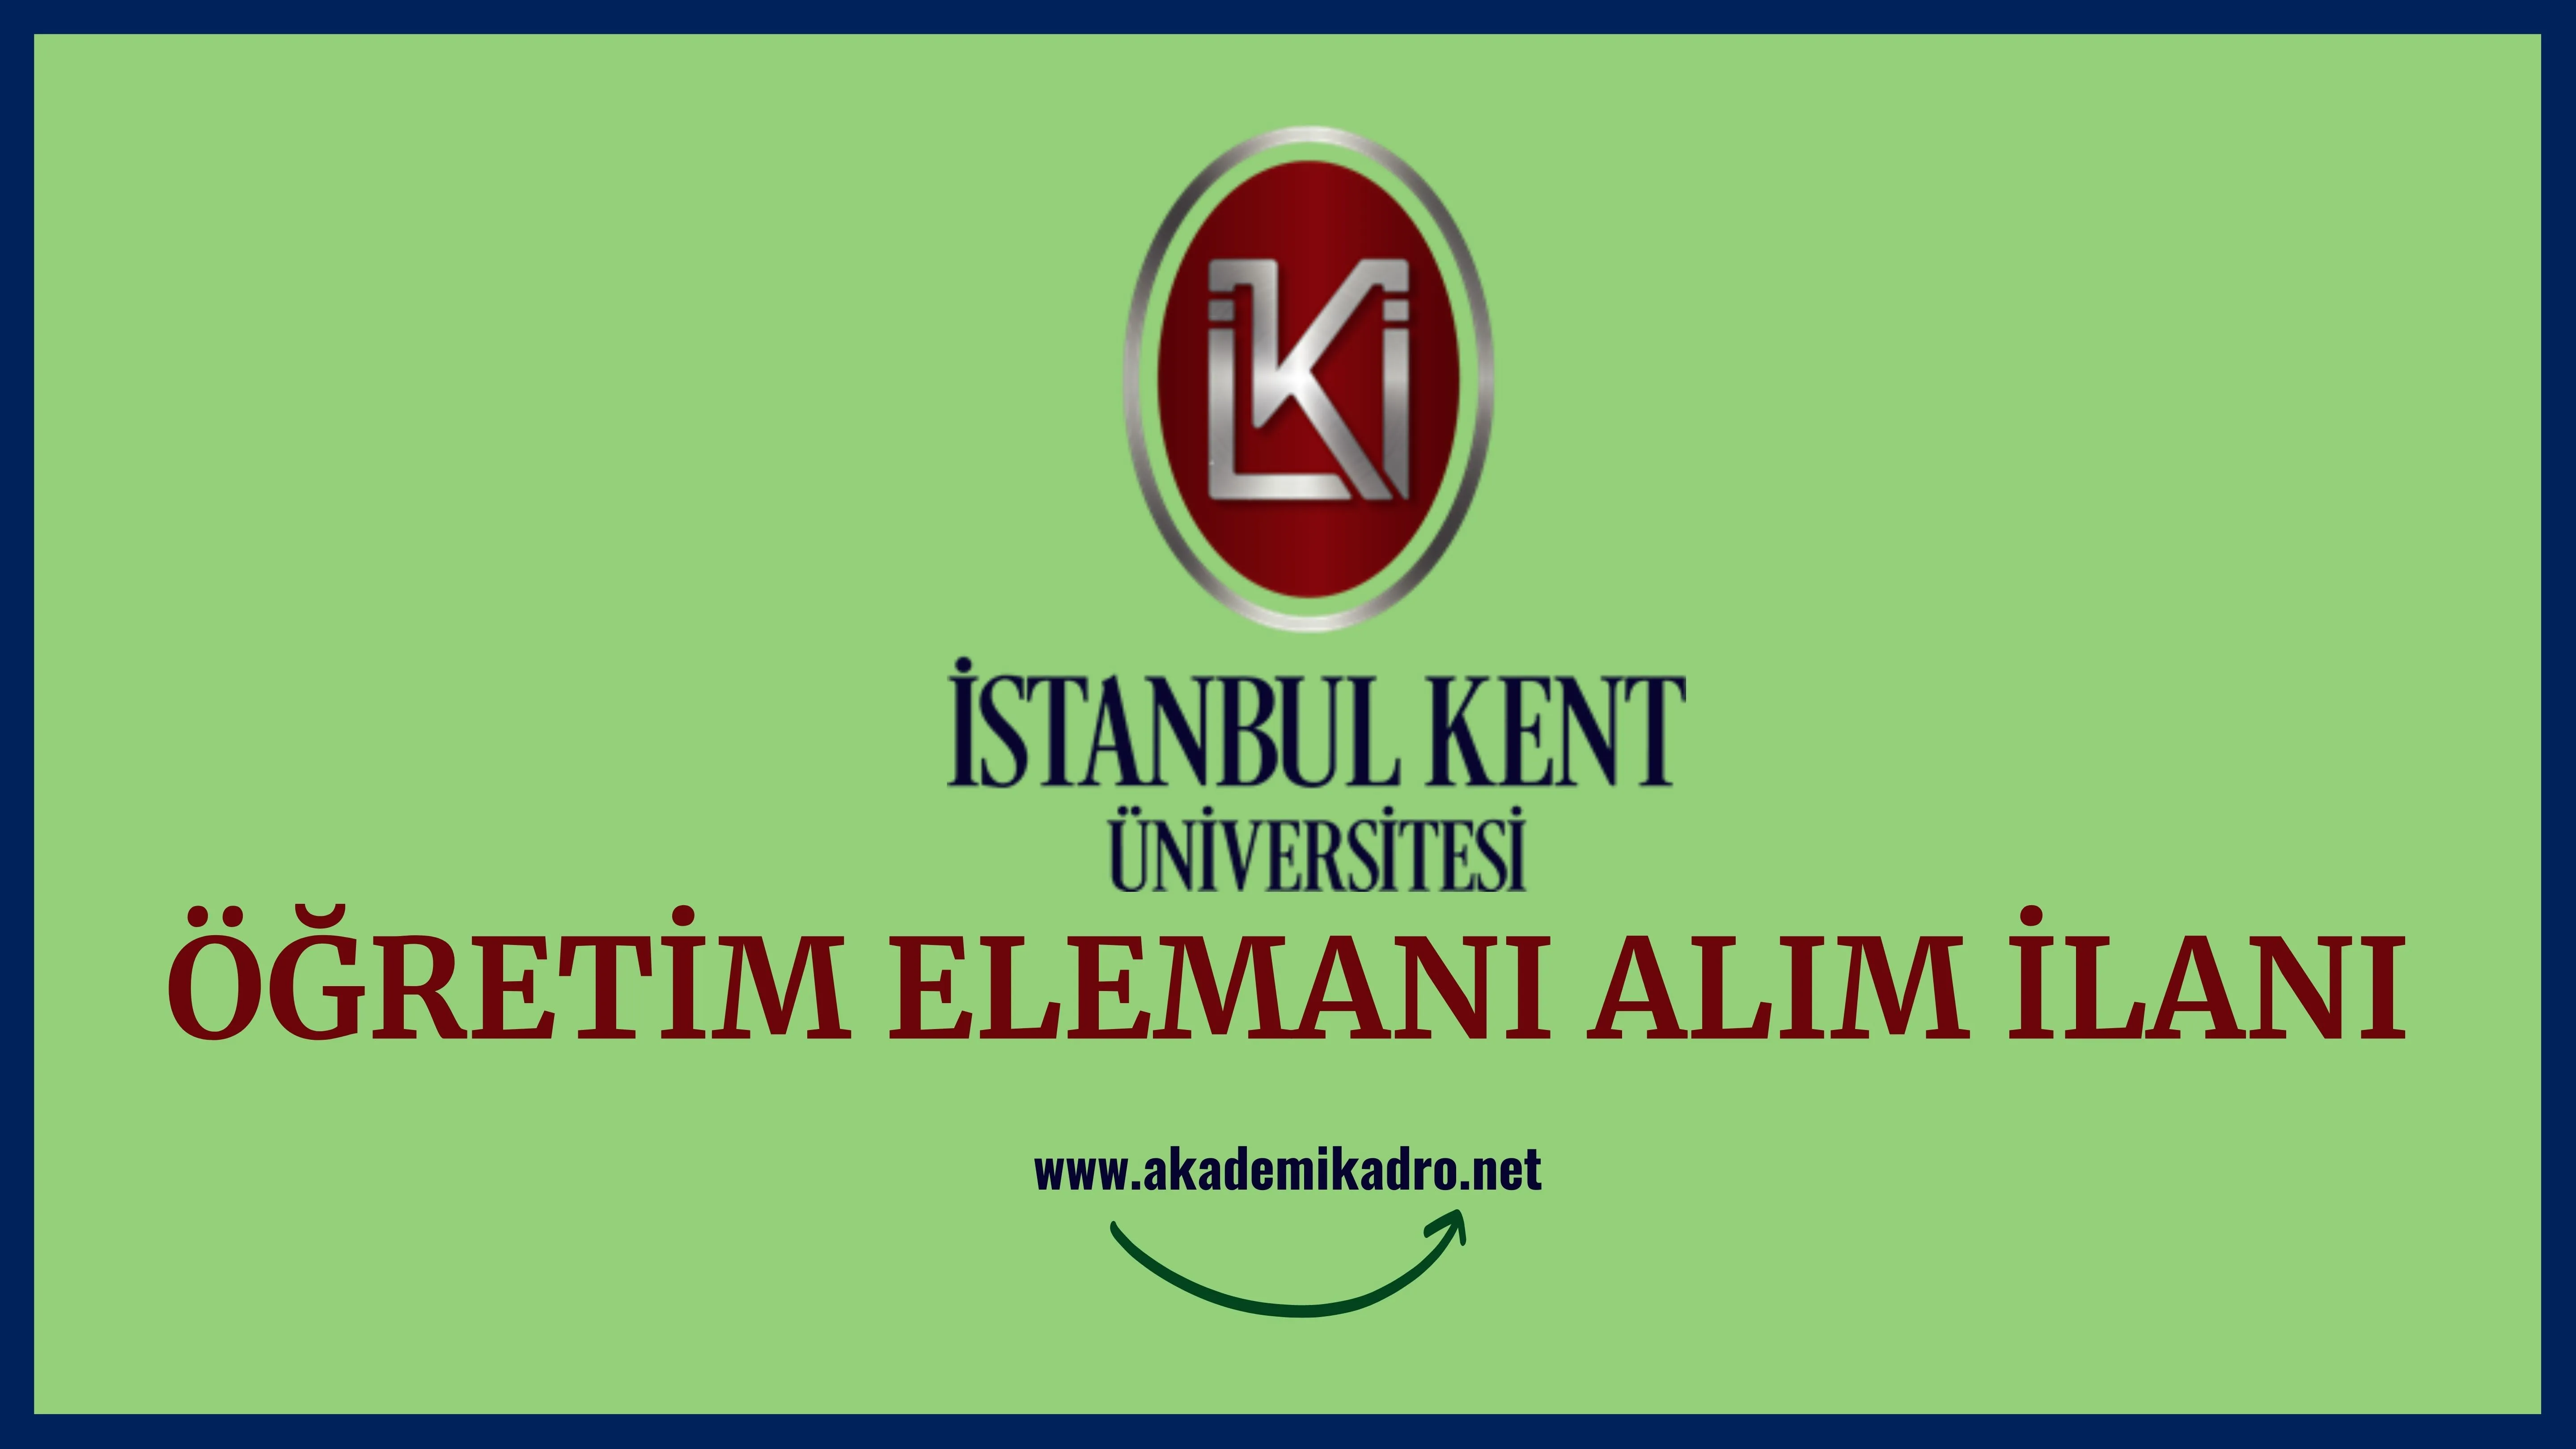 İstanbul Kent Üniversitesi 29 Öğretim üyesi ve 2 Öğretim Görevlisi alacaktır. Son başvuru tarihi 14 Eylül 2022